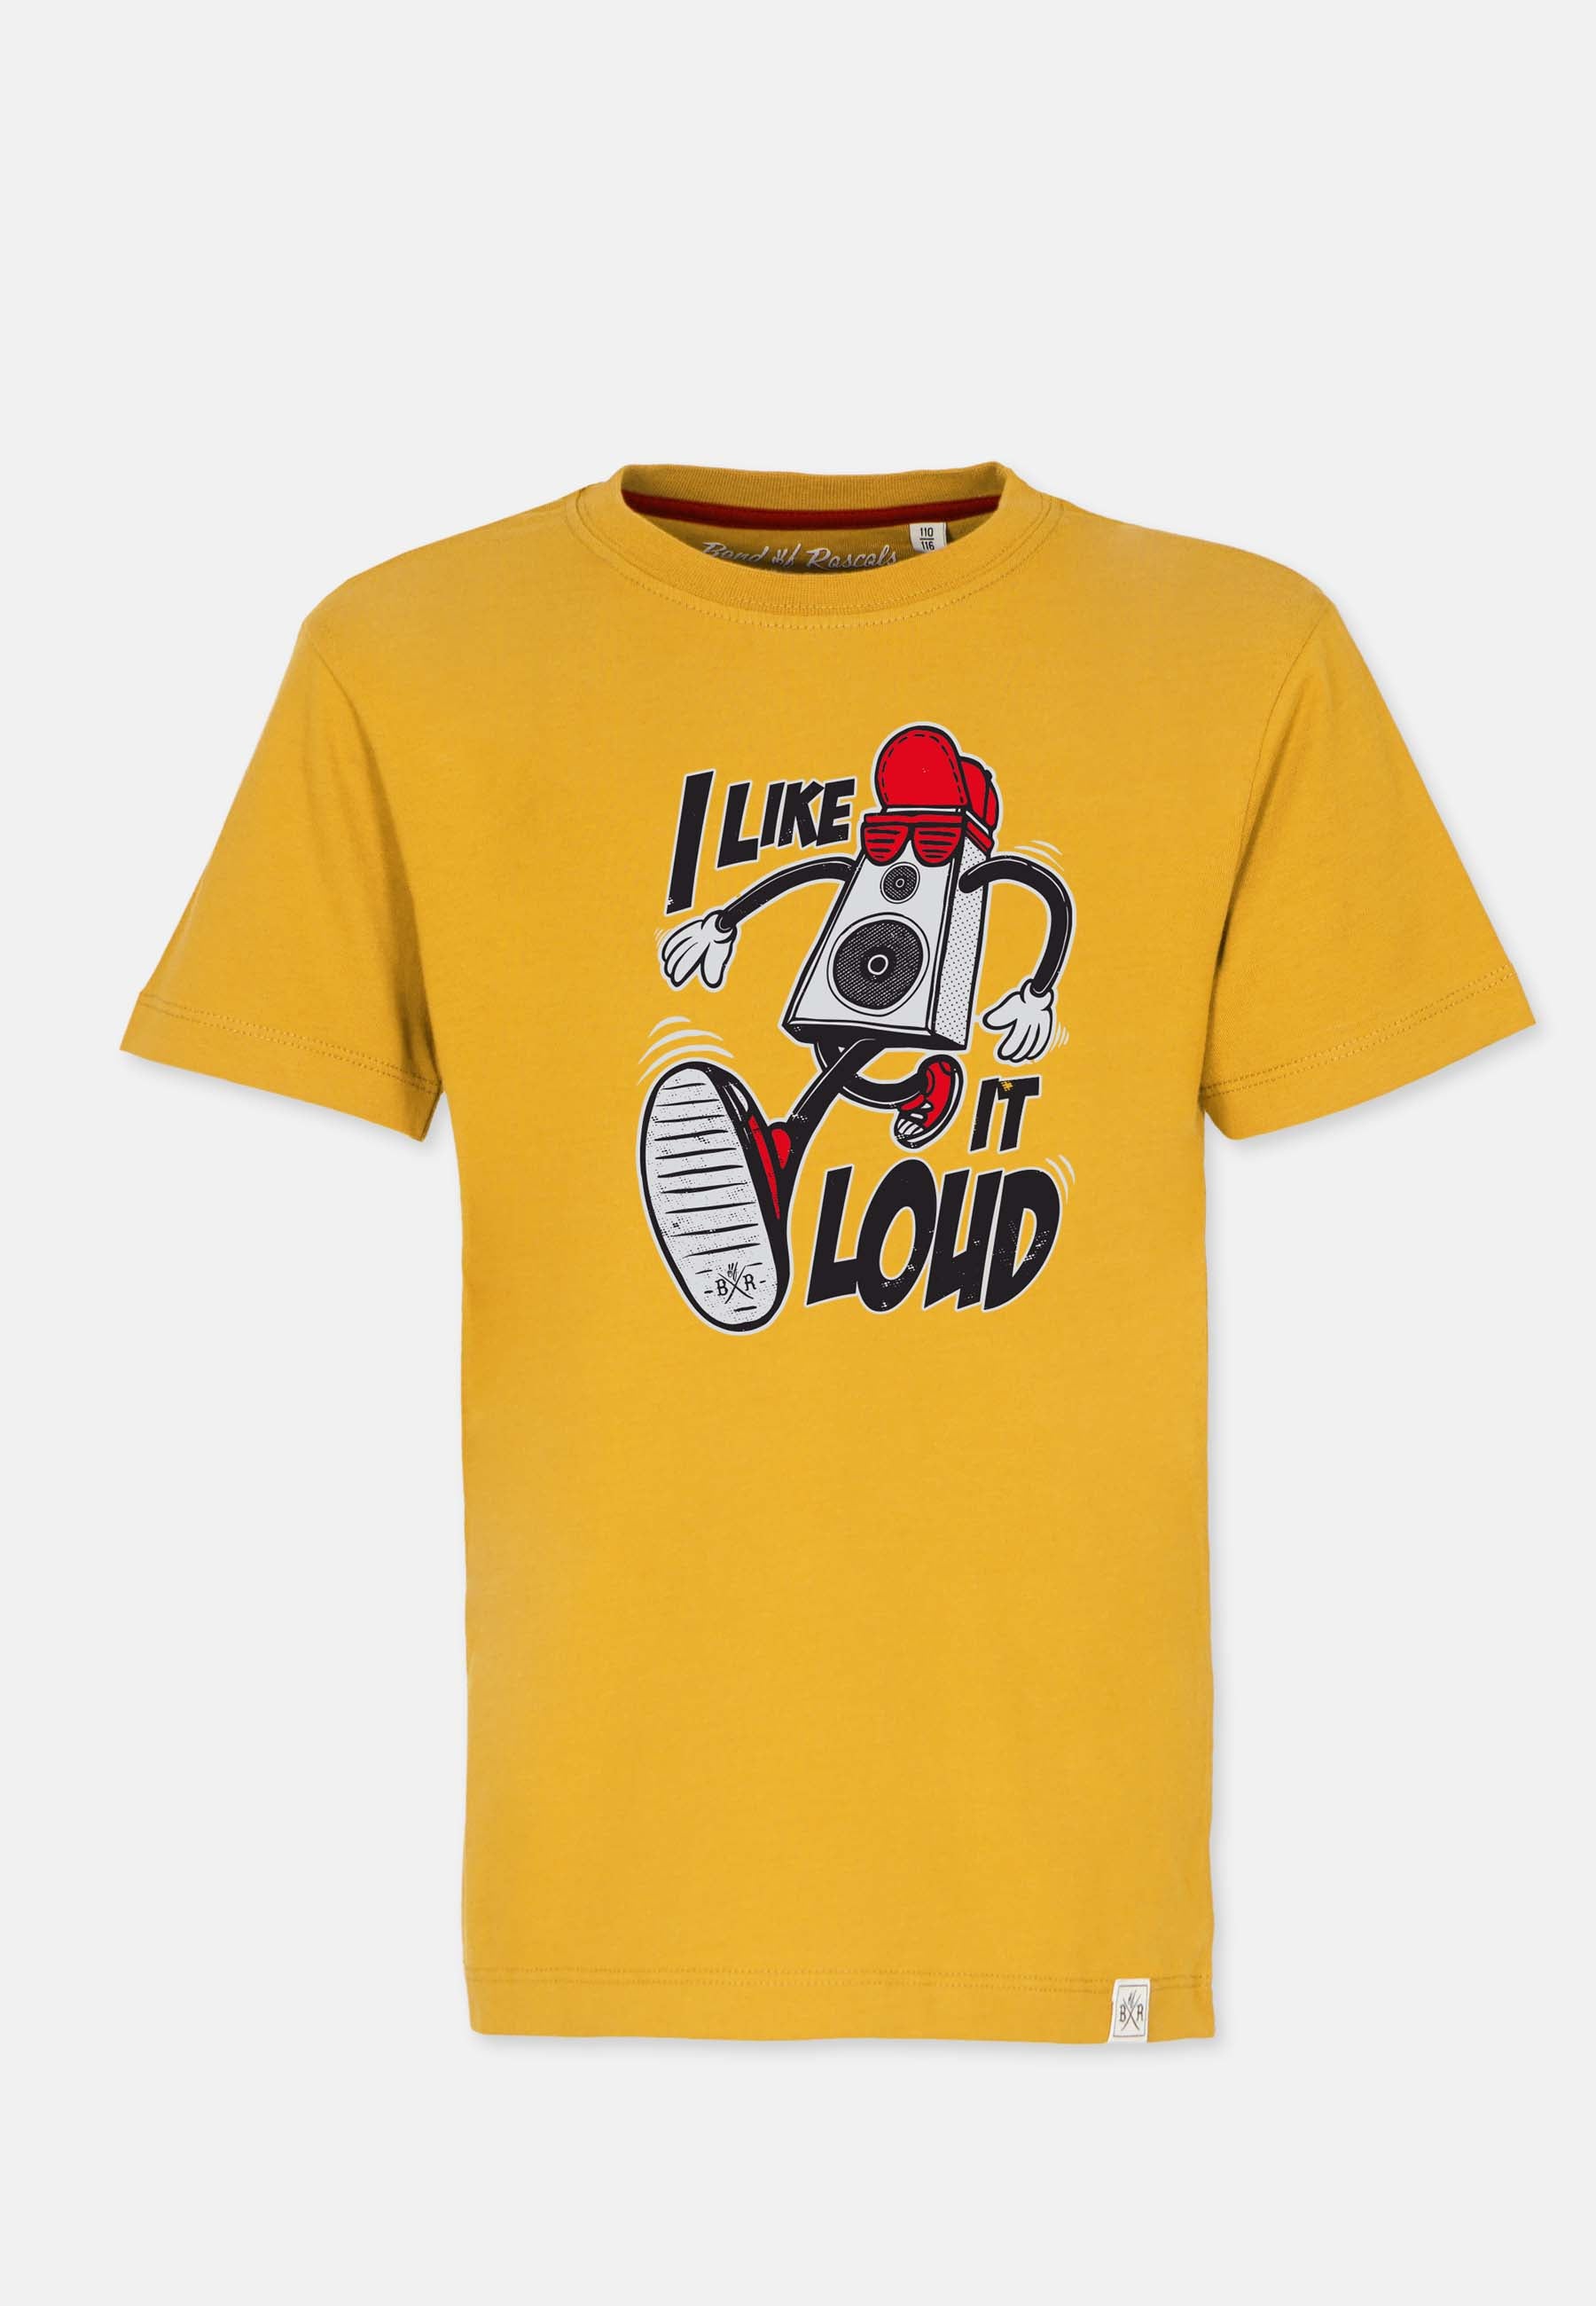 Loud T-Shirt